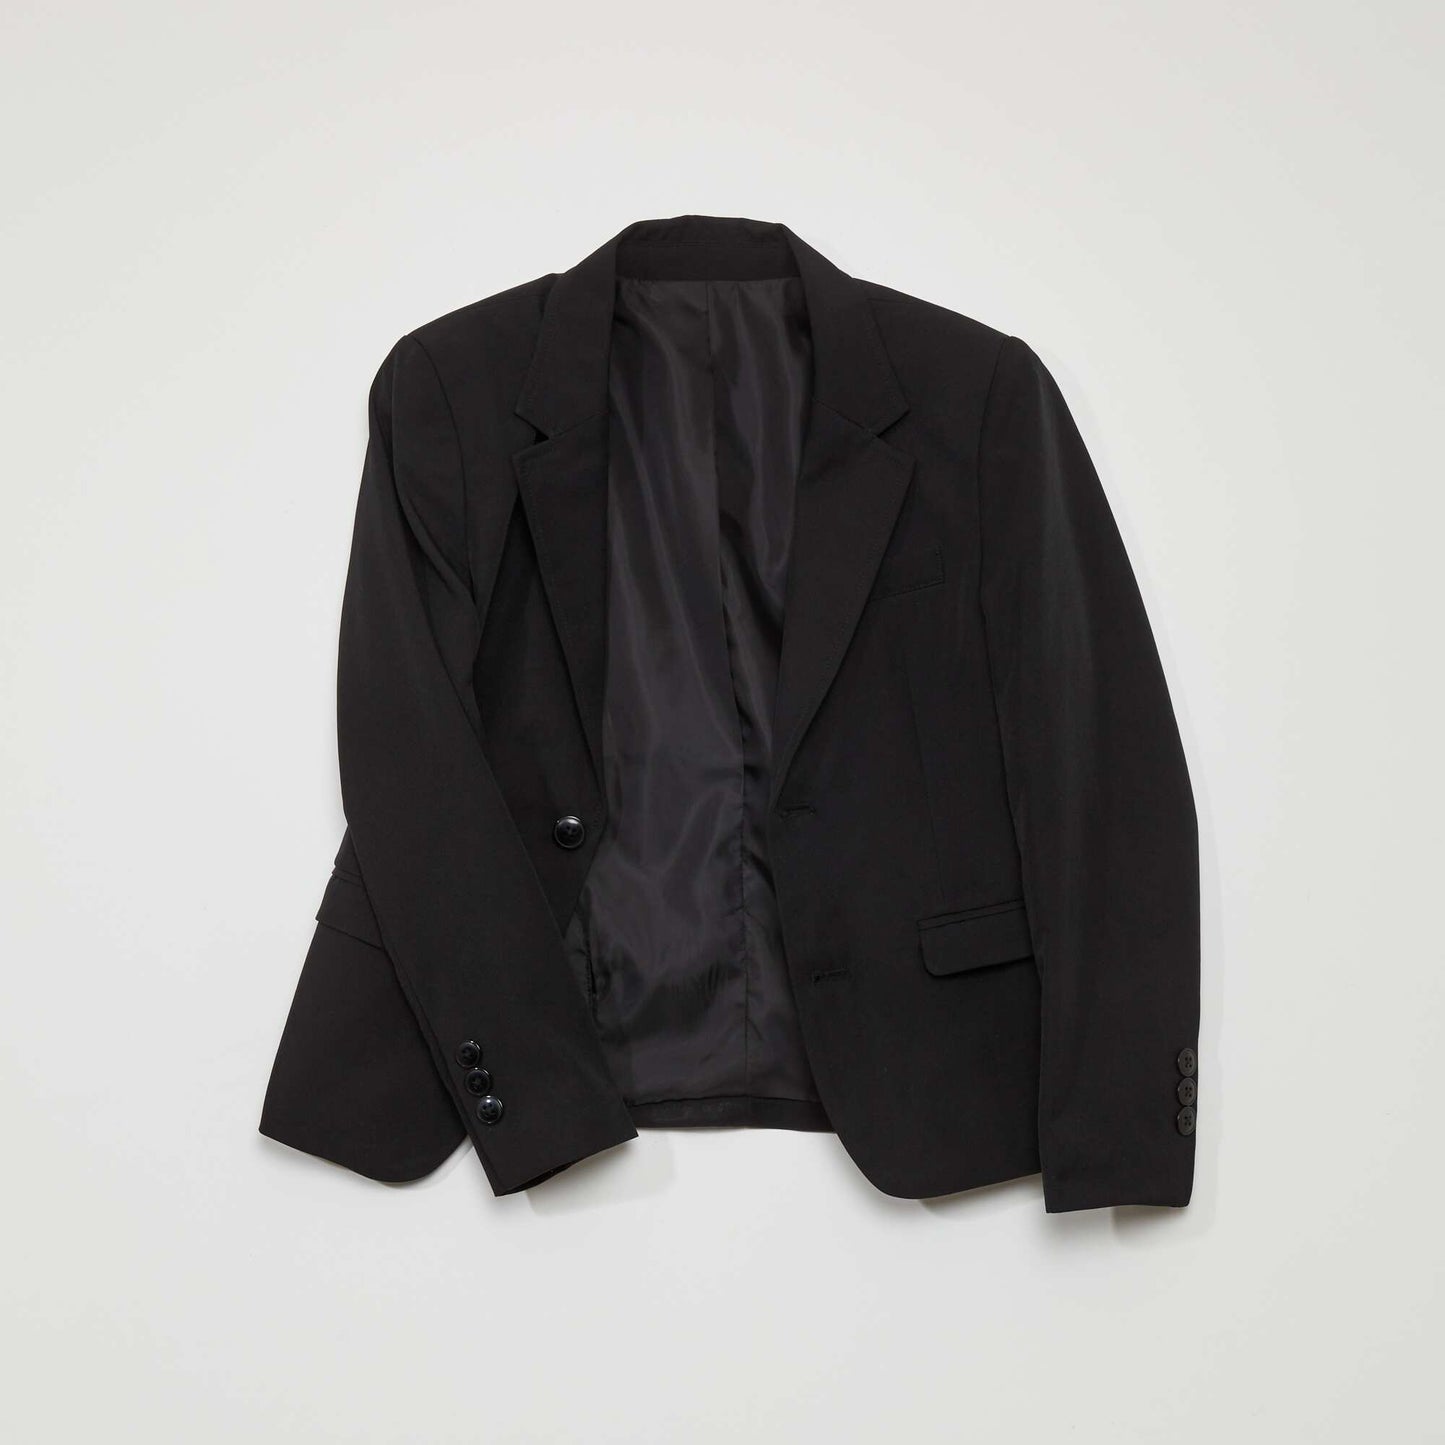 Suit jacket black